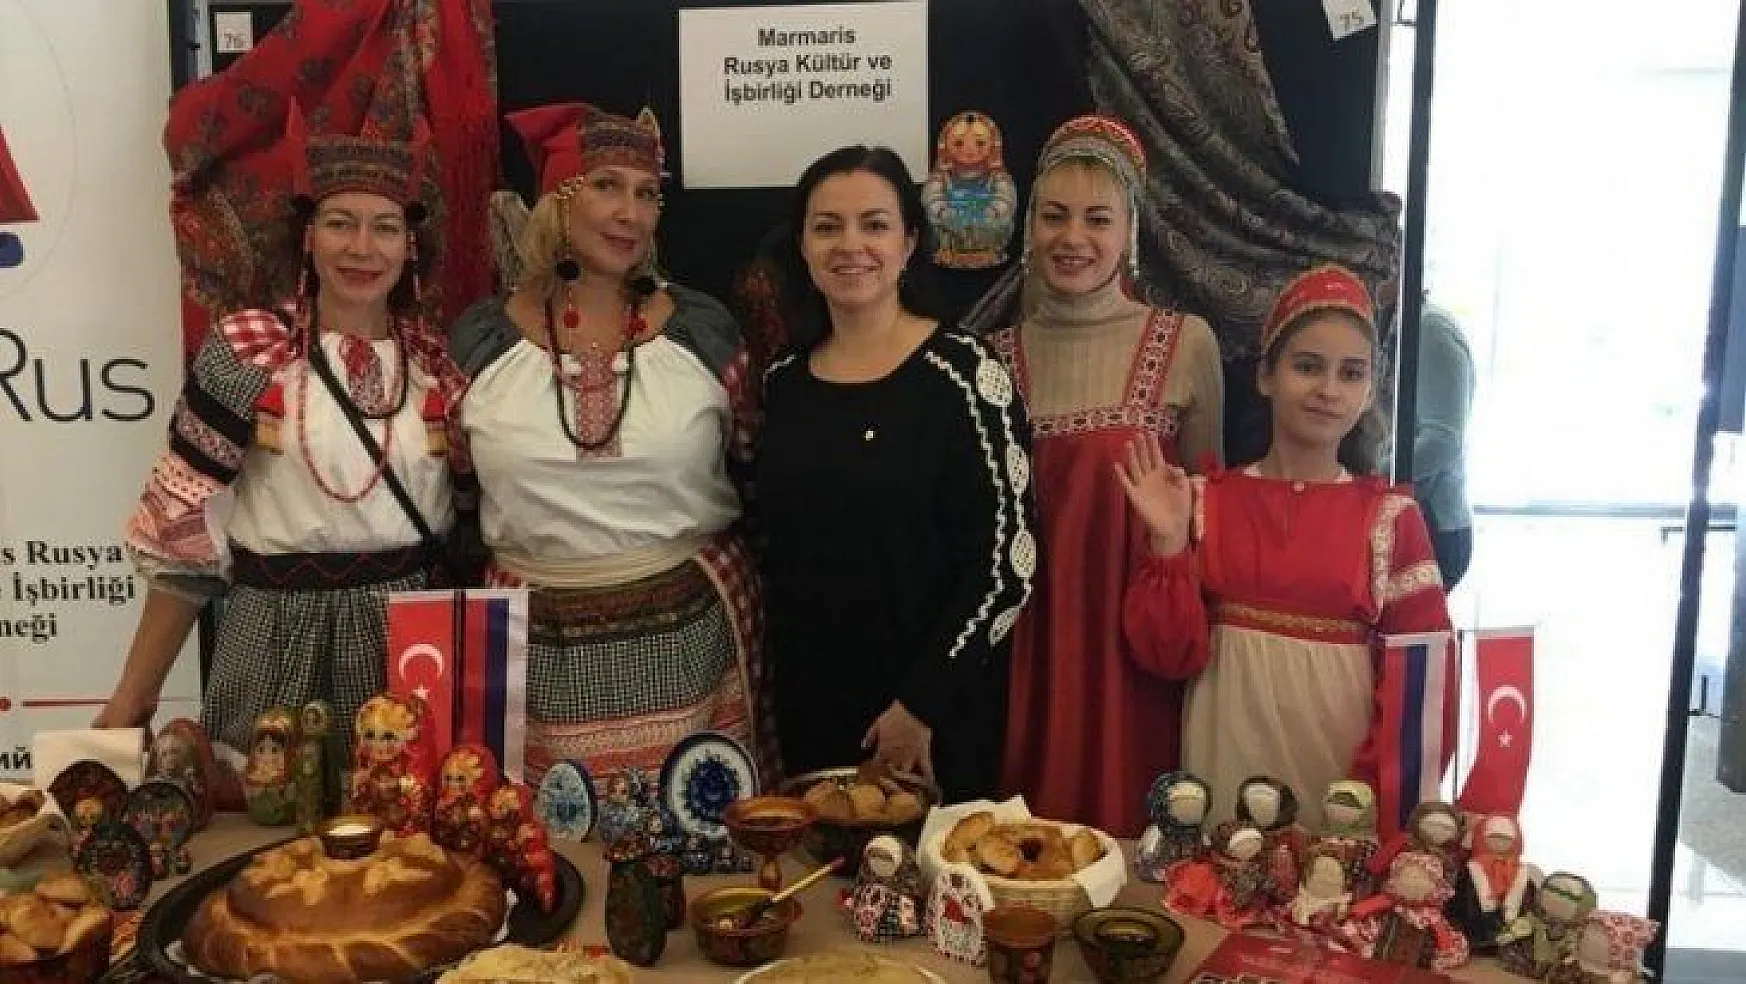 Marmaris Rusya Kültür ve İşbirliği Derneği ve Marmaris Kent Konseyinden gelmeyin çağrısı